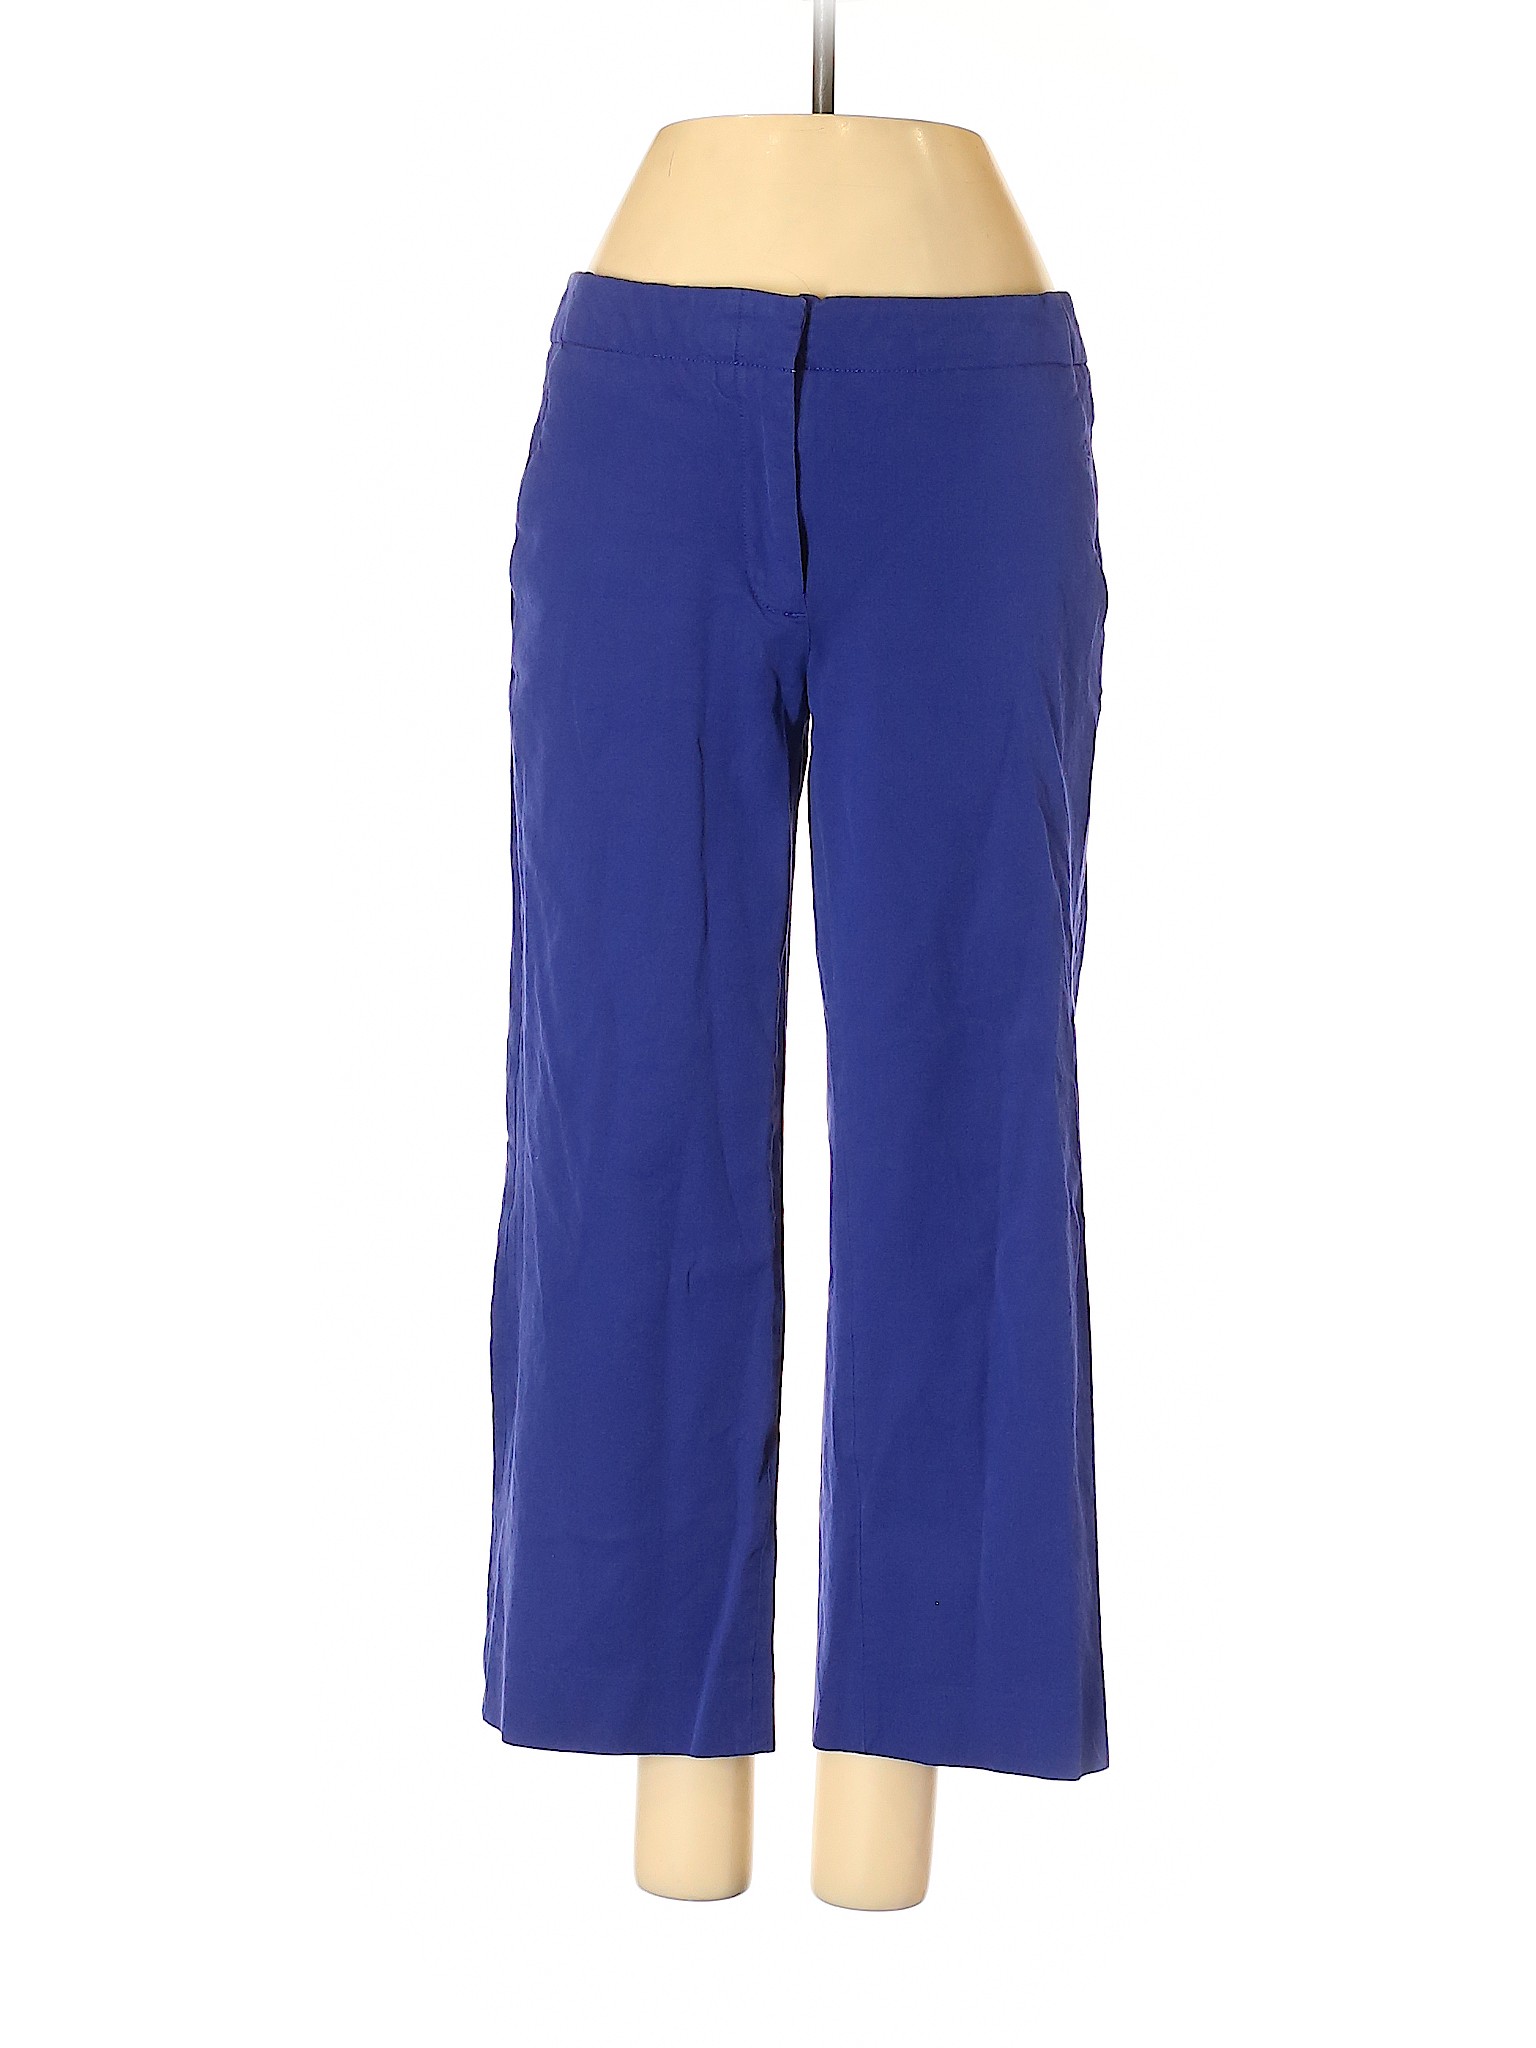 J.Crew Women Blue Casual Pants 2 | eBay